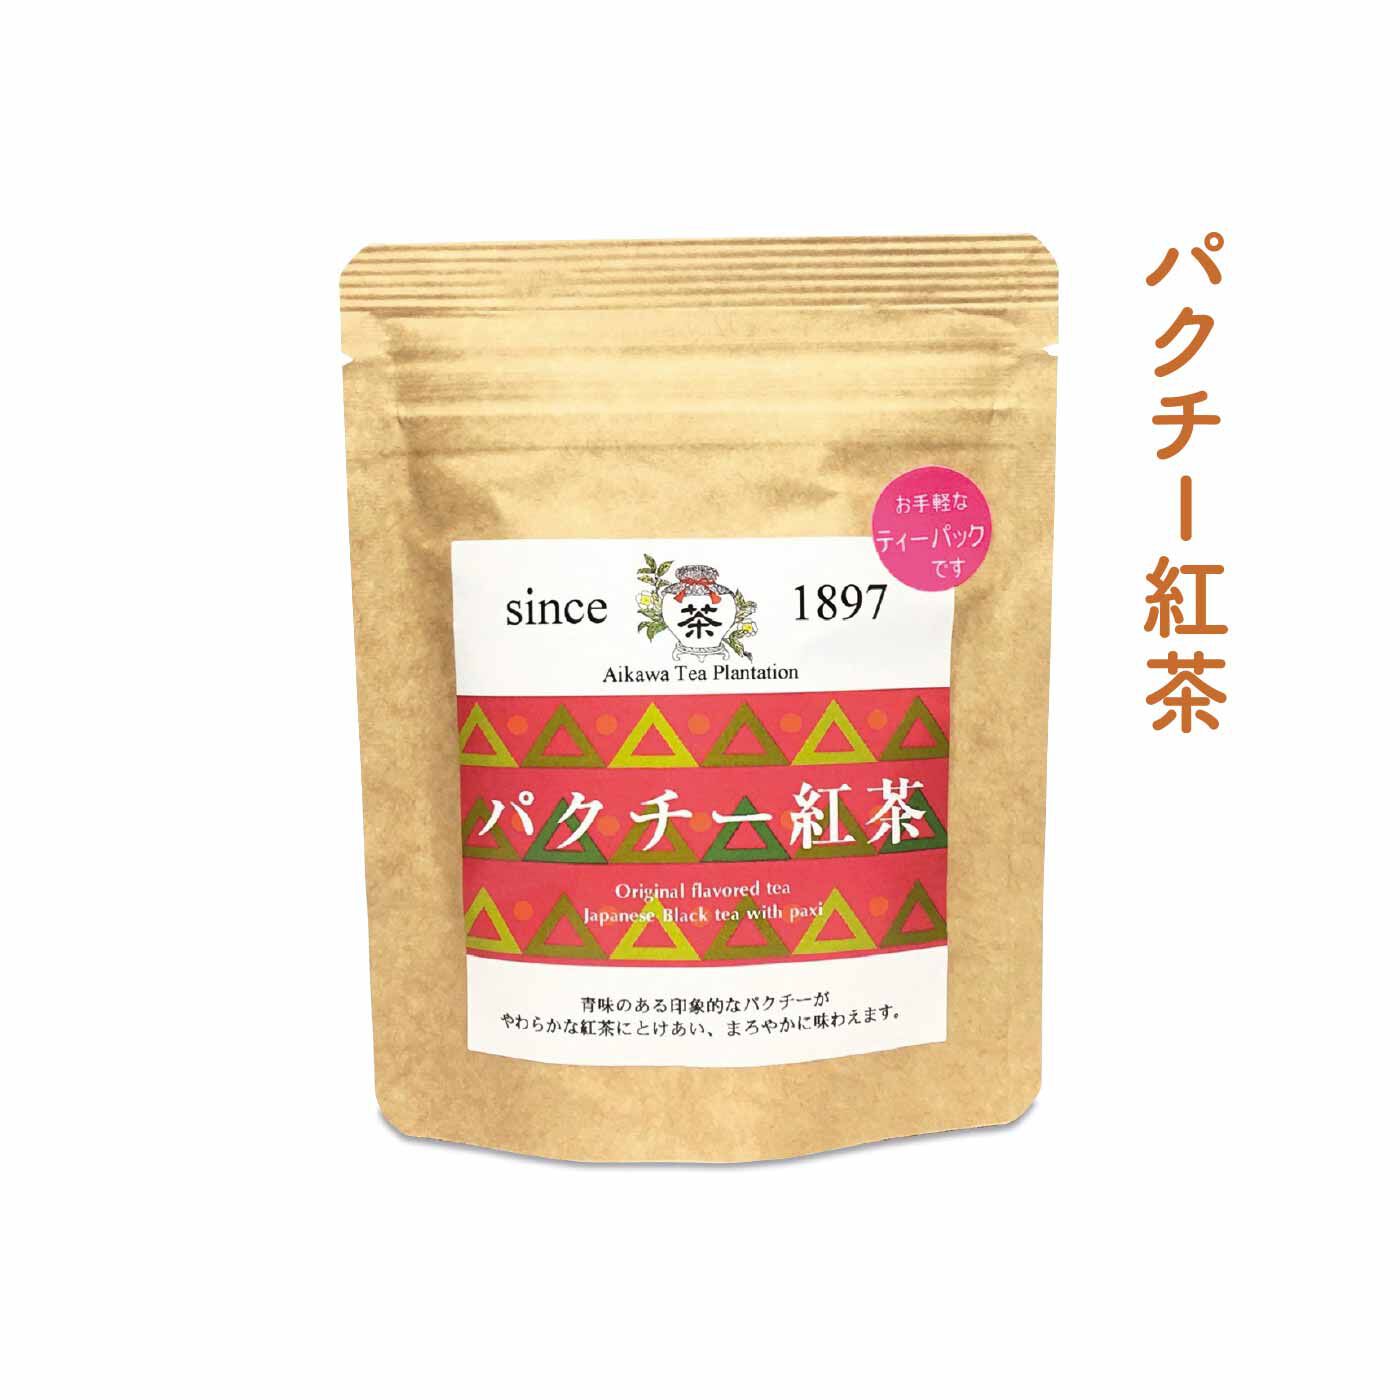 FELISSIMO PARTNERS|佐賀 相川製茶舗 いろんな味わいが楽しい うれしの茶の会（12回予約）|佐賀県産パクチーを使用したブレンドティー。